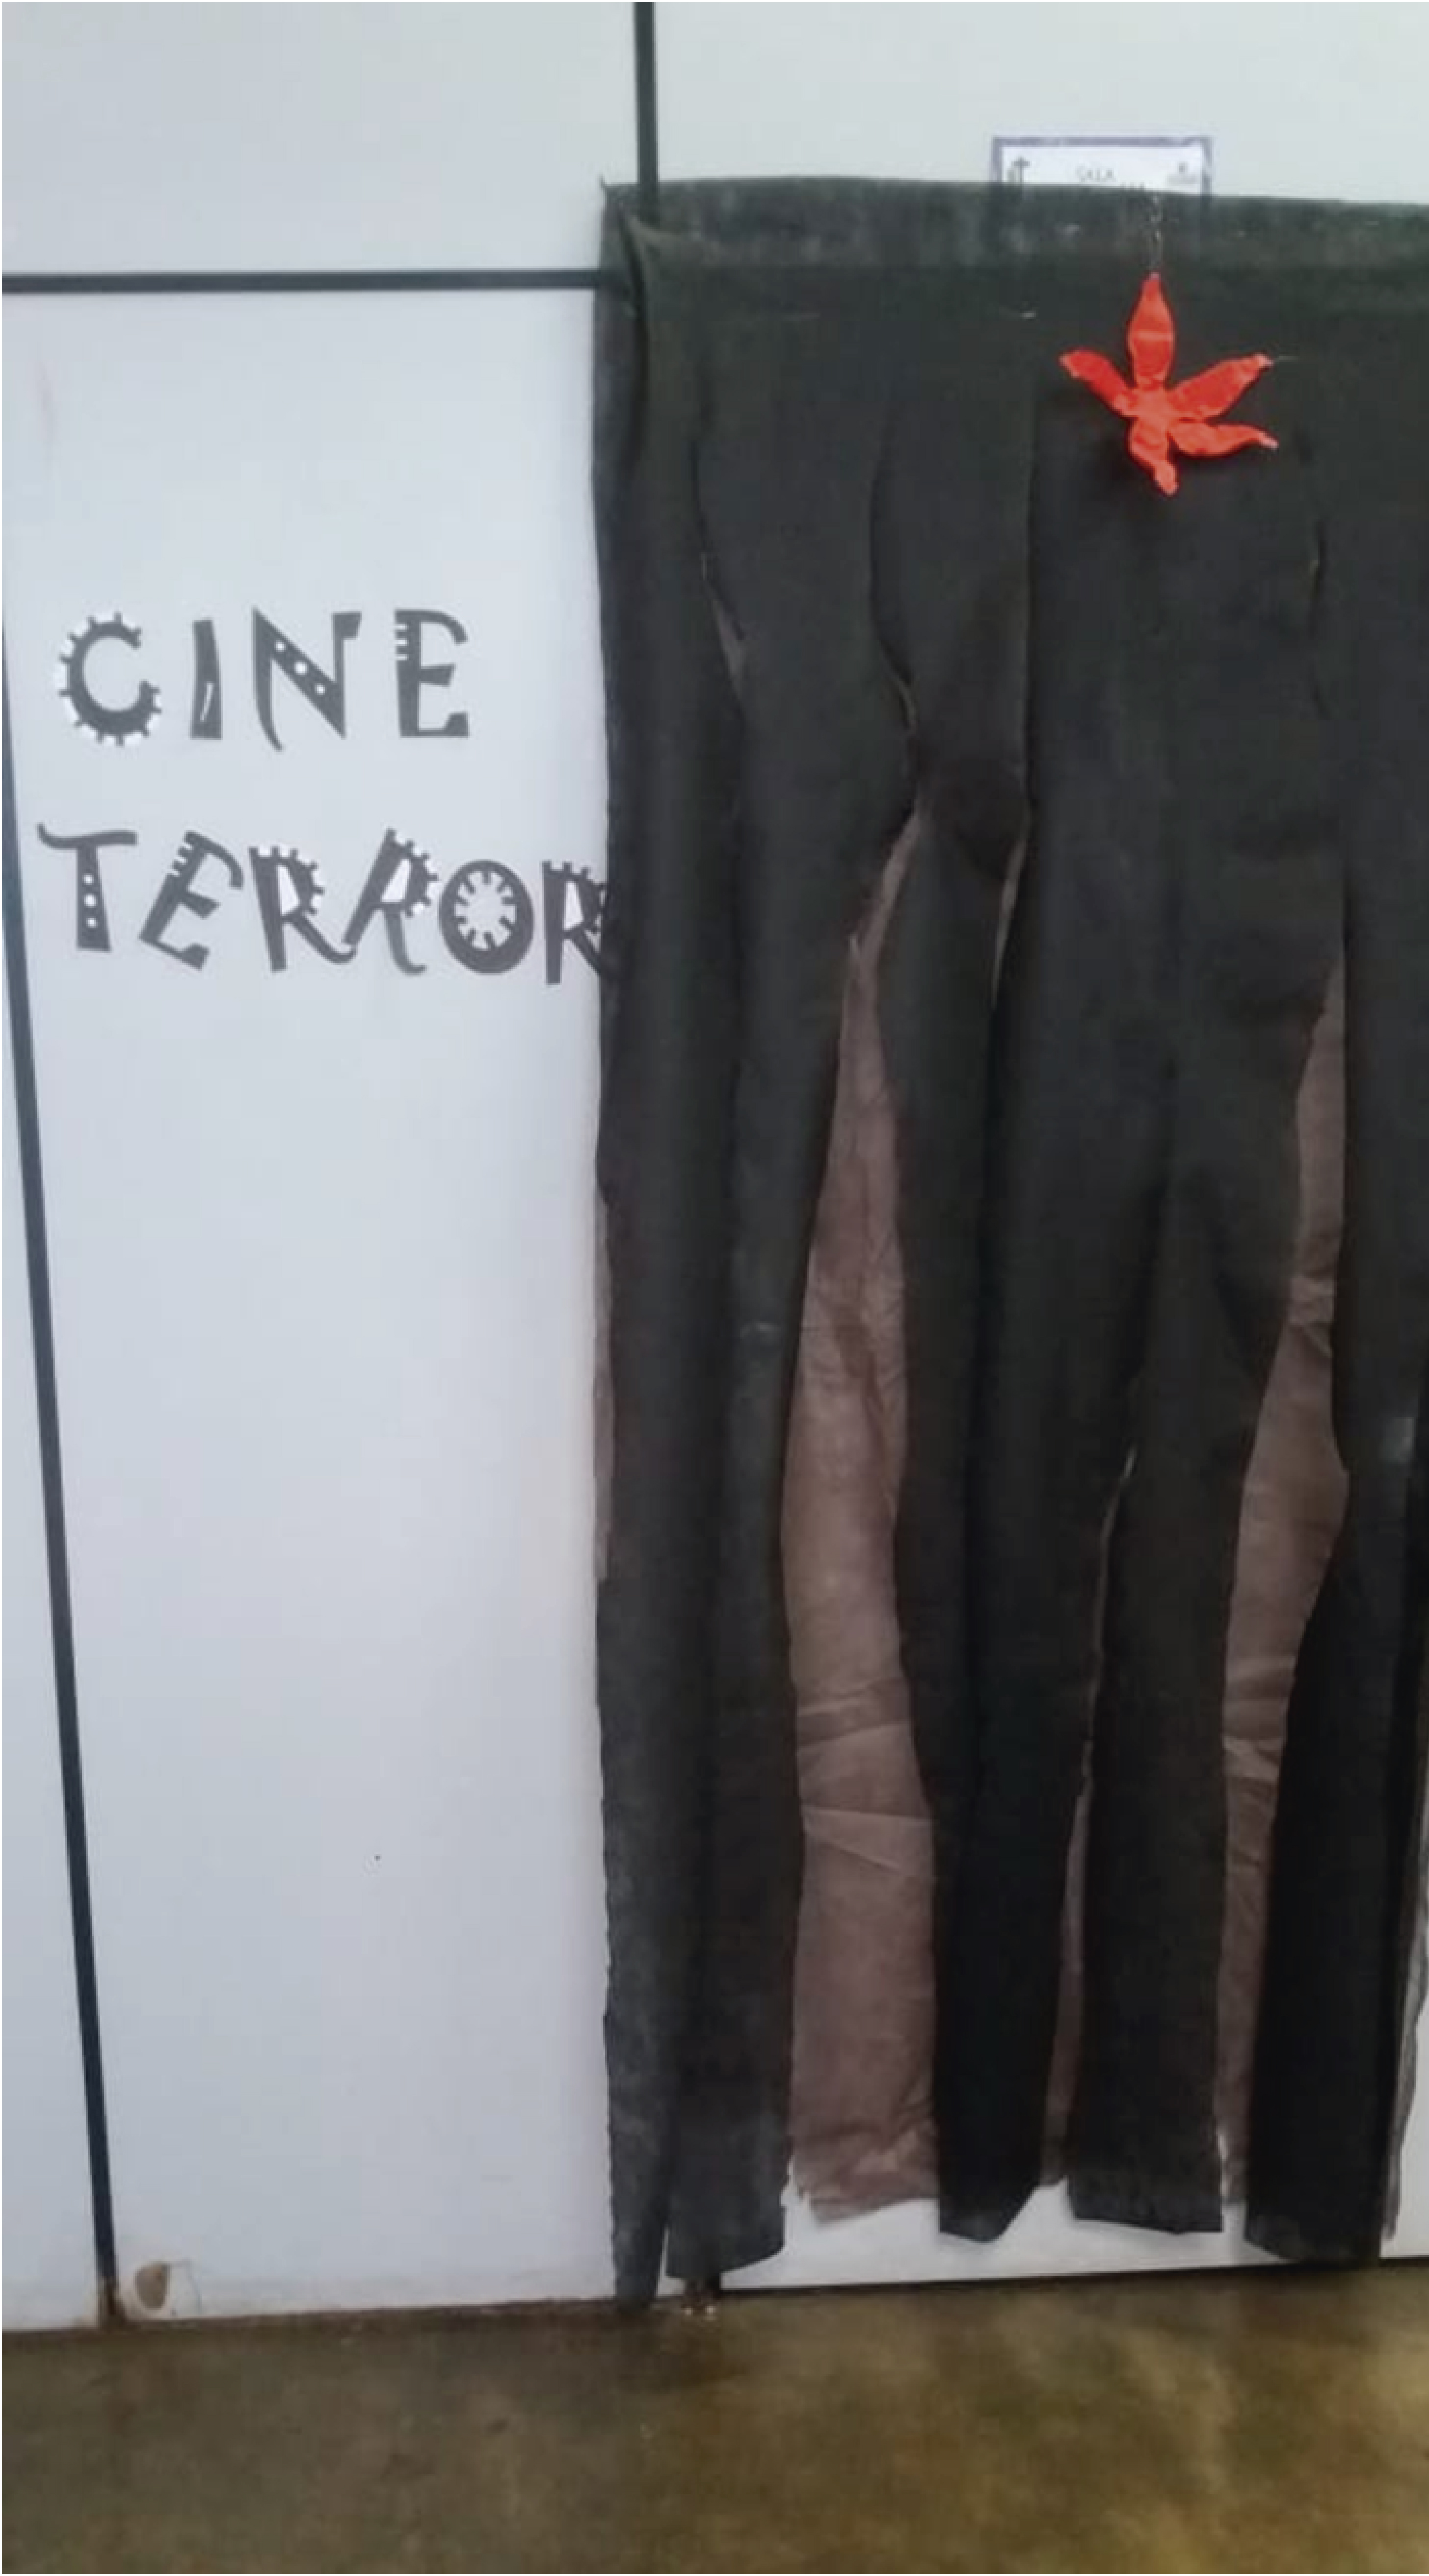 Frase "CineTerror" escrita na parede